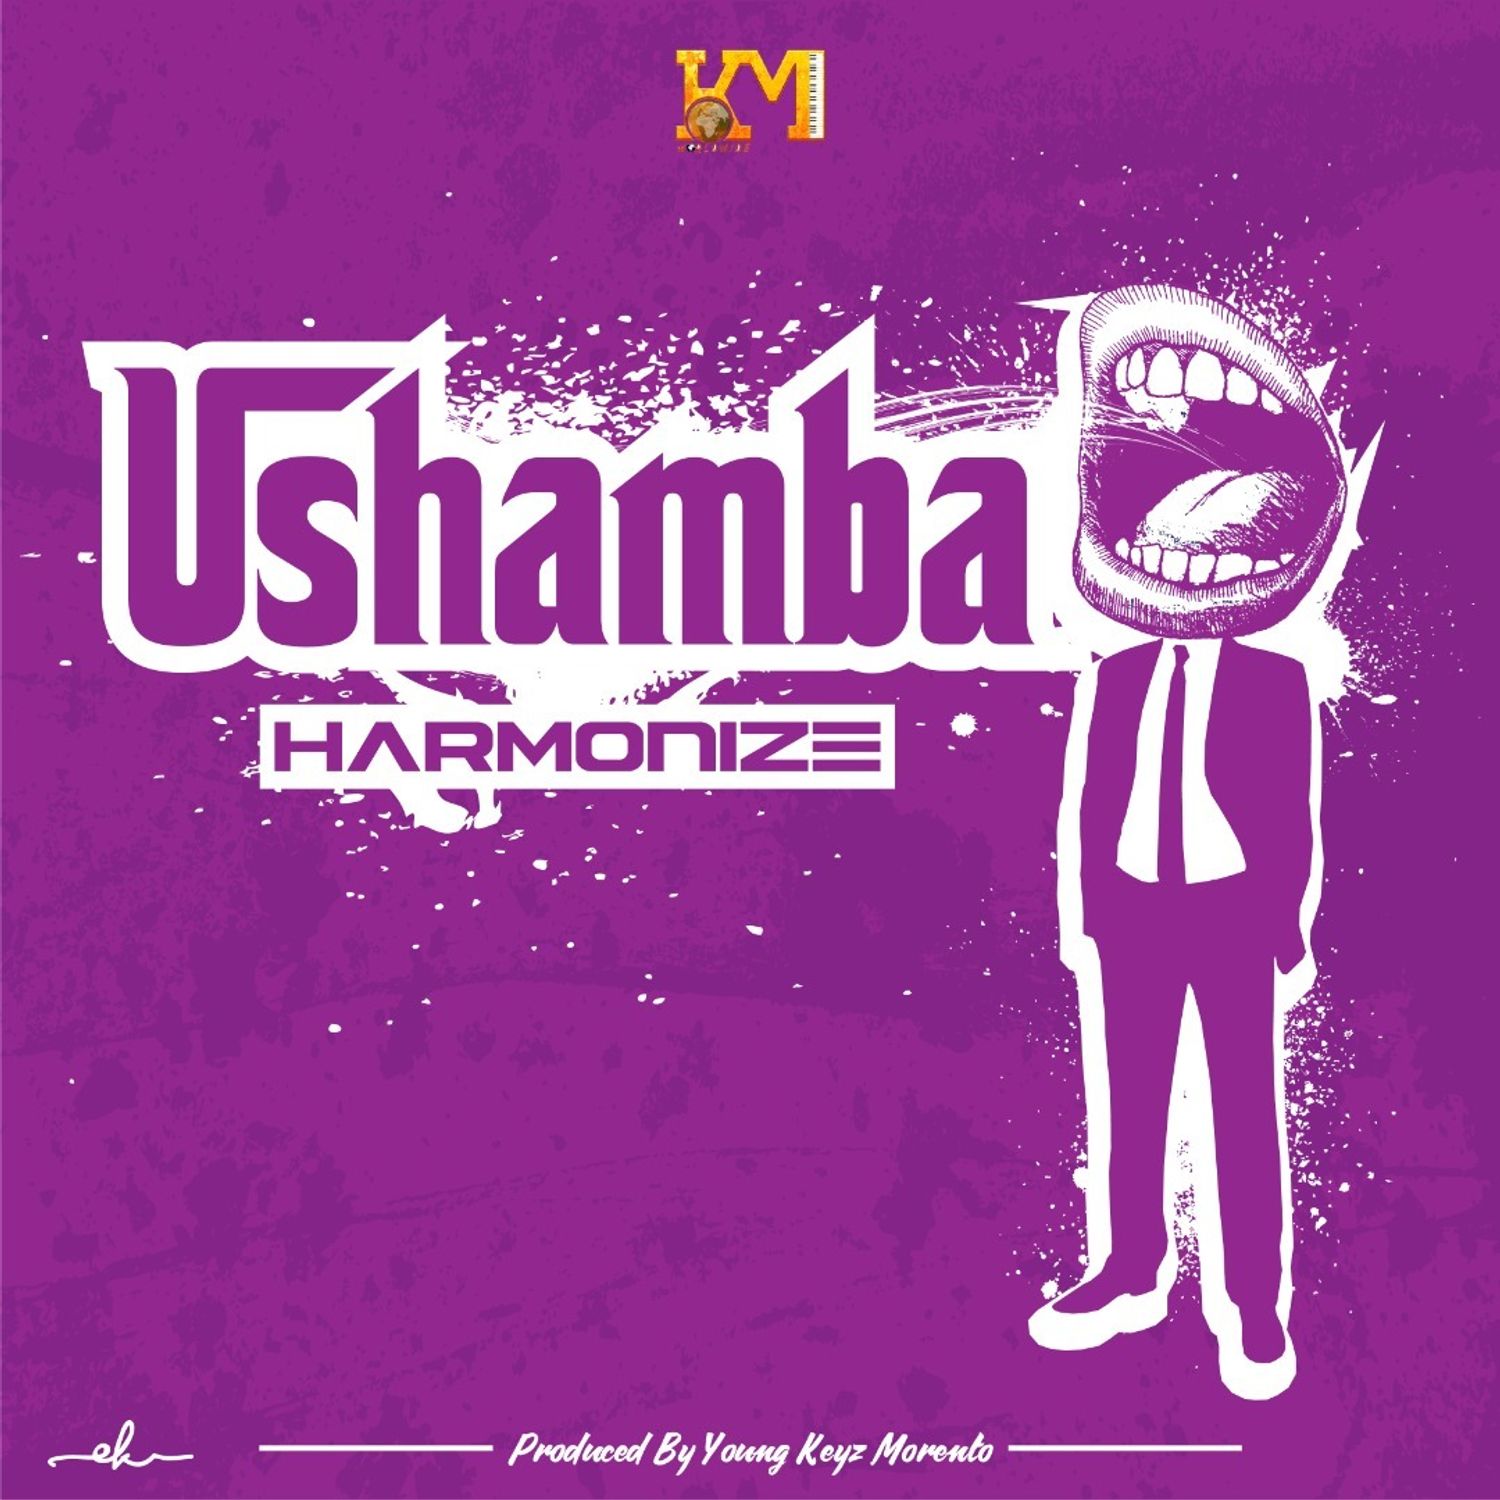 Harmonize - Ushamba